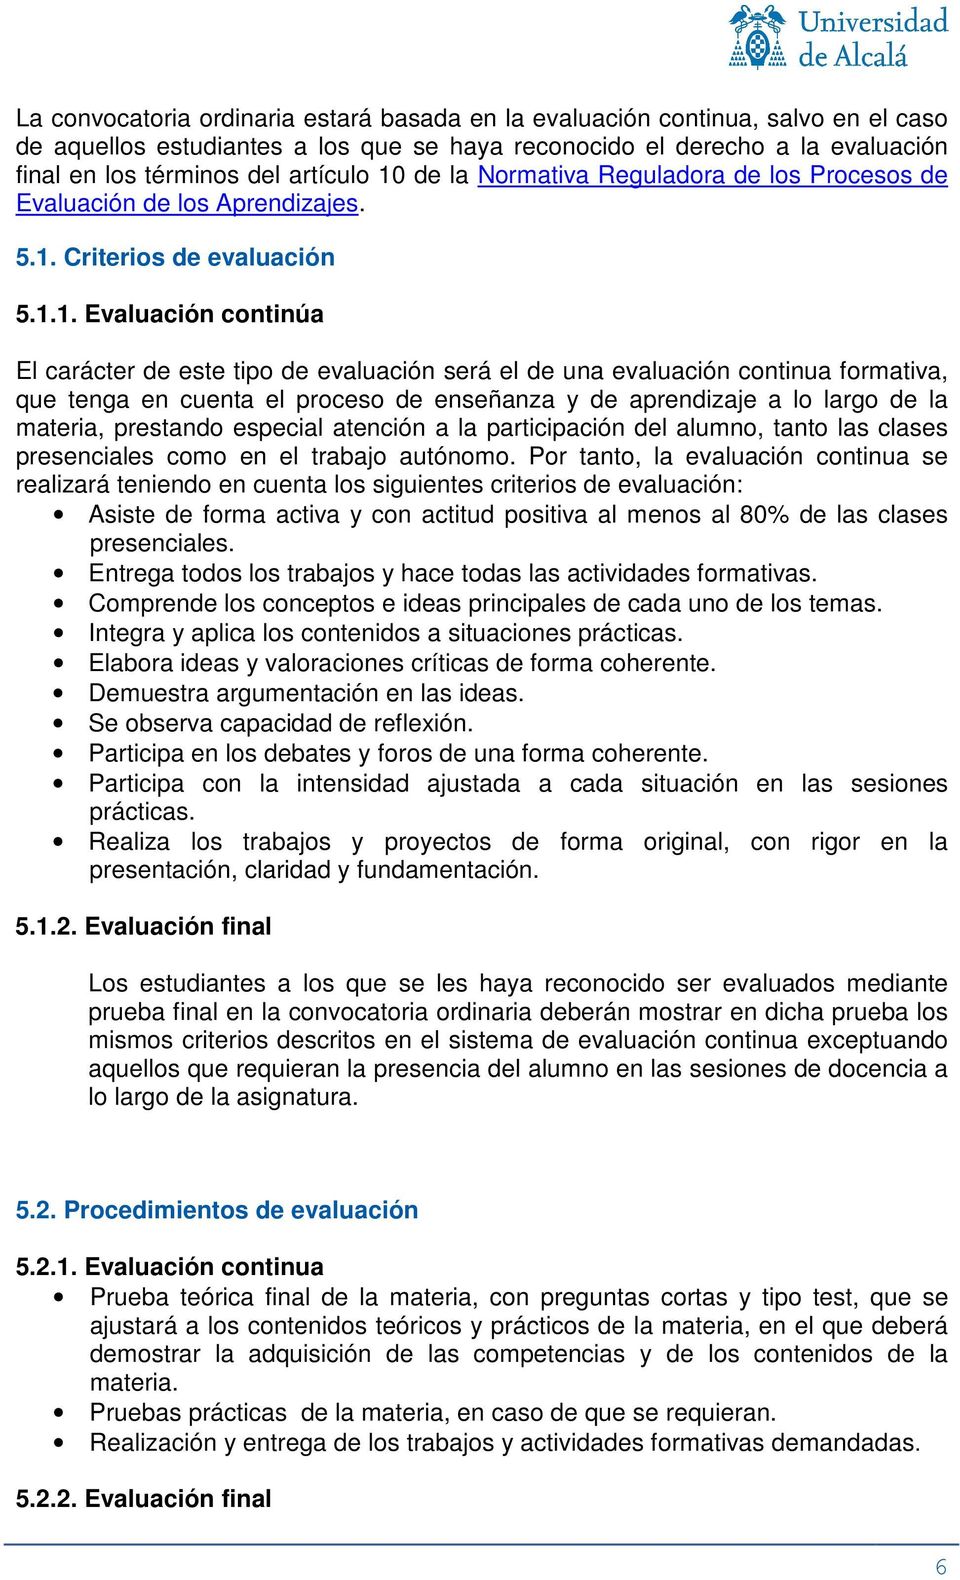 Criteris de evaluación 5.1.